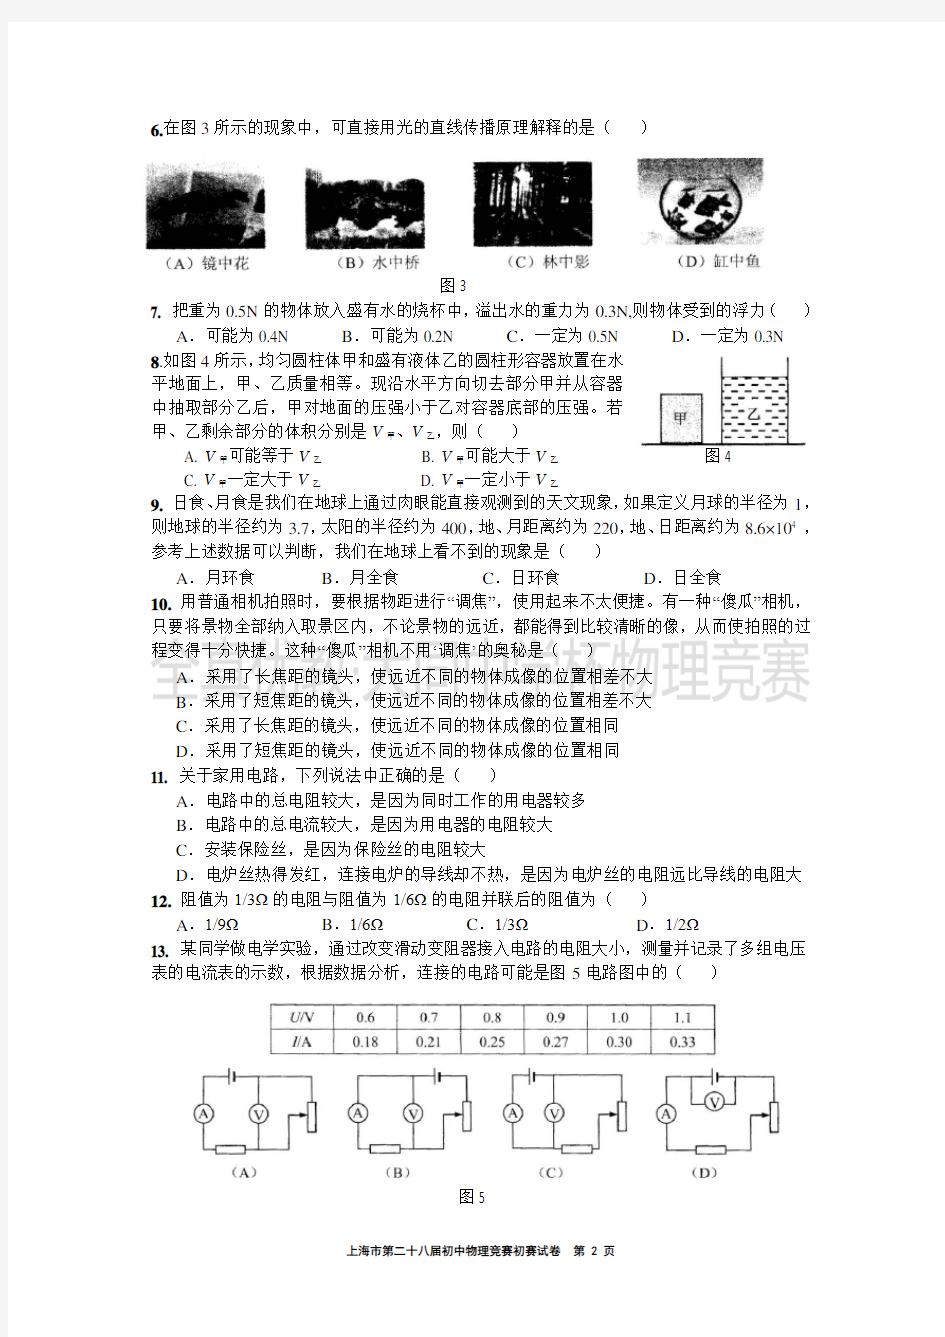 2014学年第28届上海大同杯物理竞赛初赛试卷(含答案)